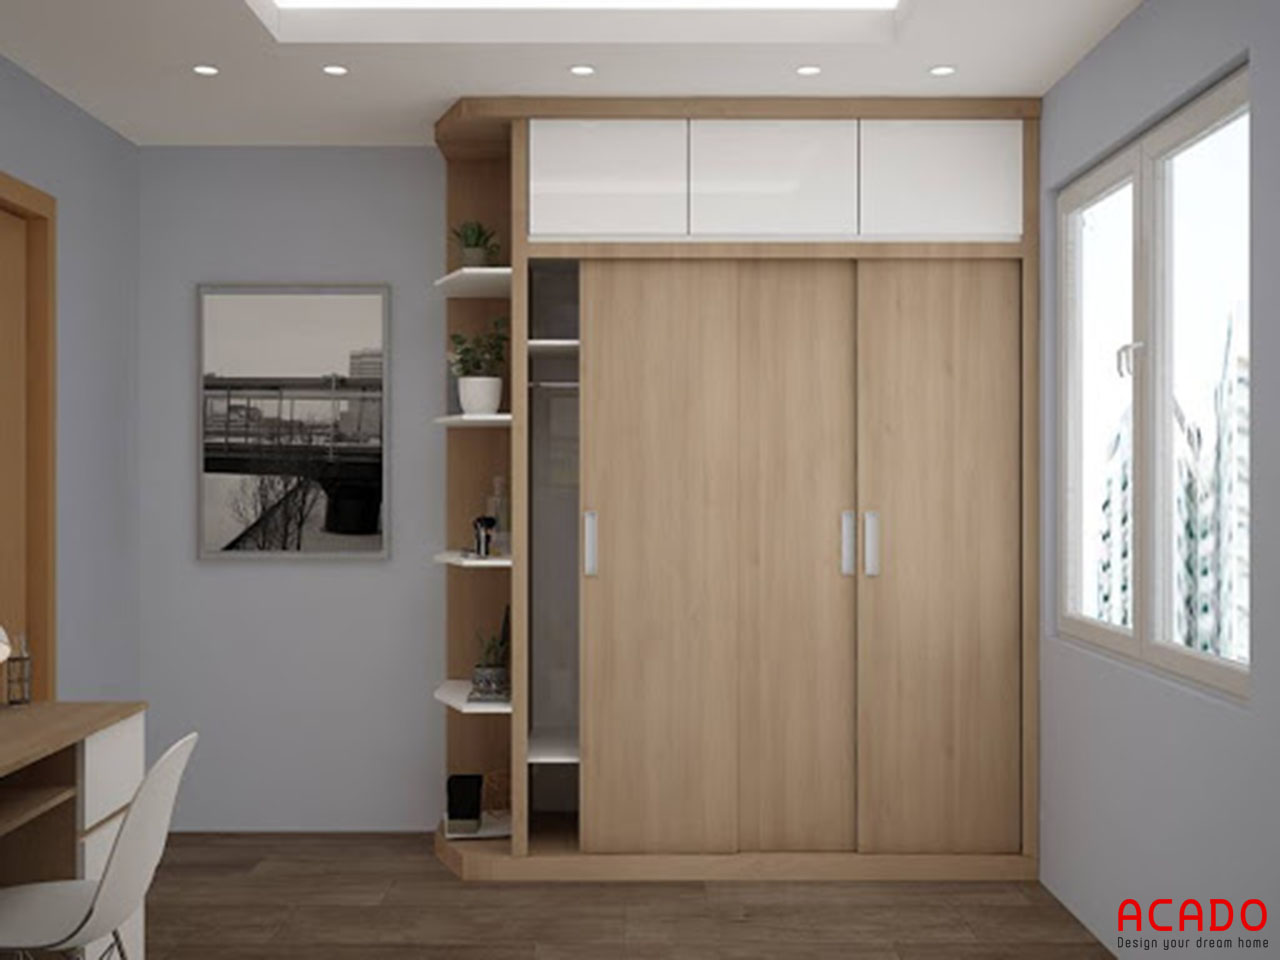 Tủ áo gỗ Melamine màu vân gỗ sát trần thoải mái không gian chứa đồ cho bạn